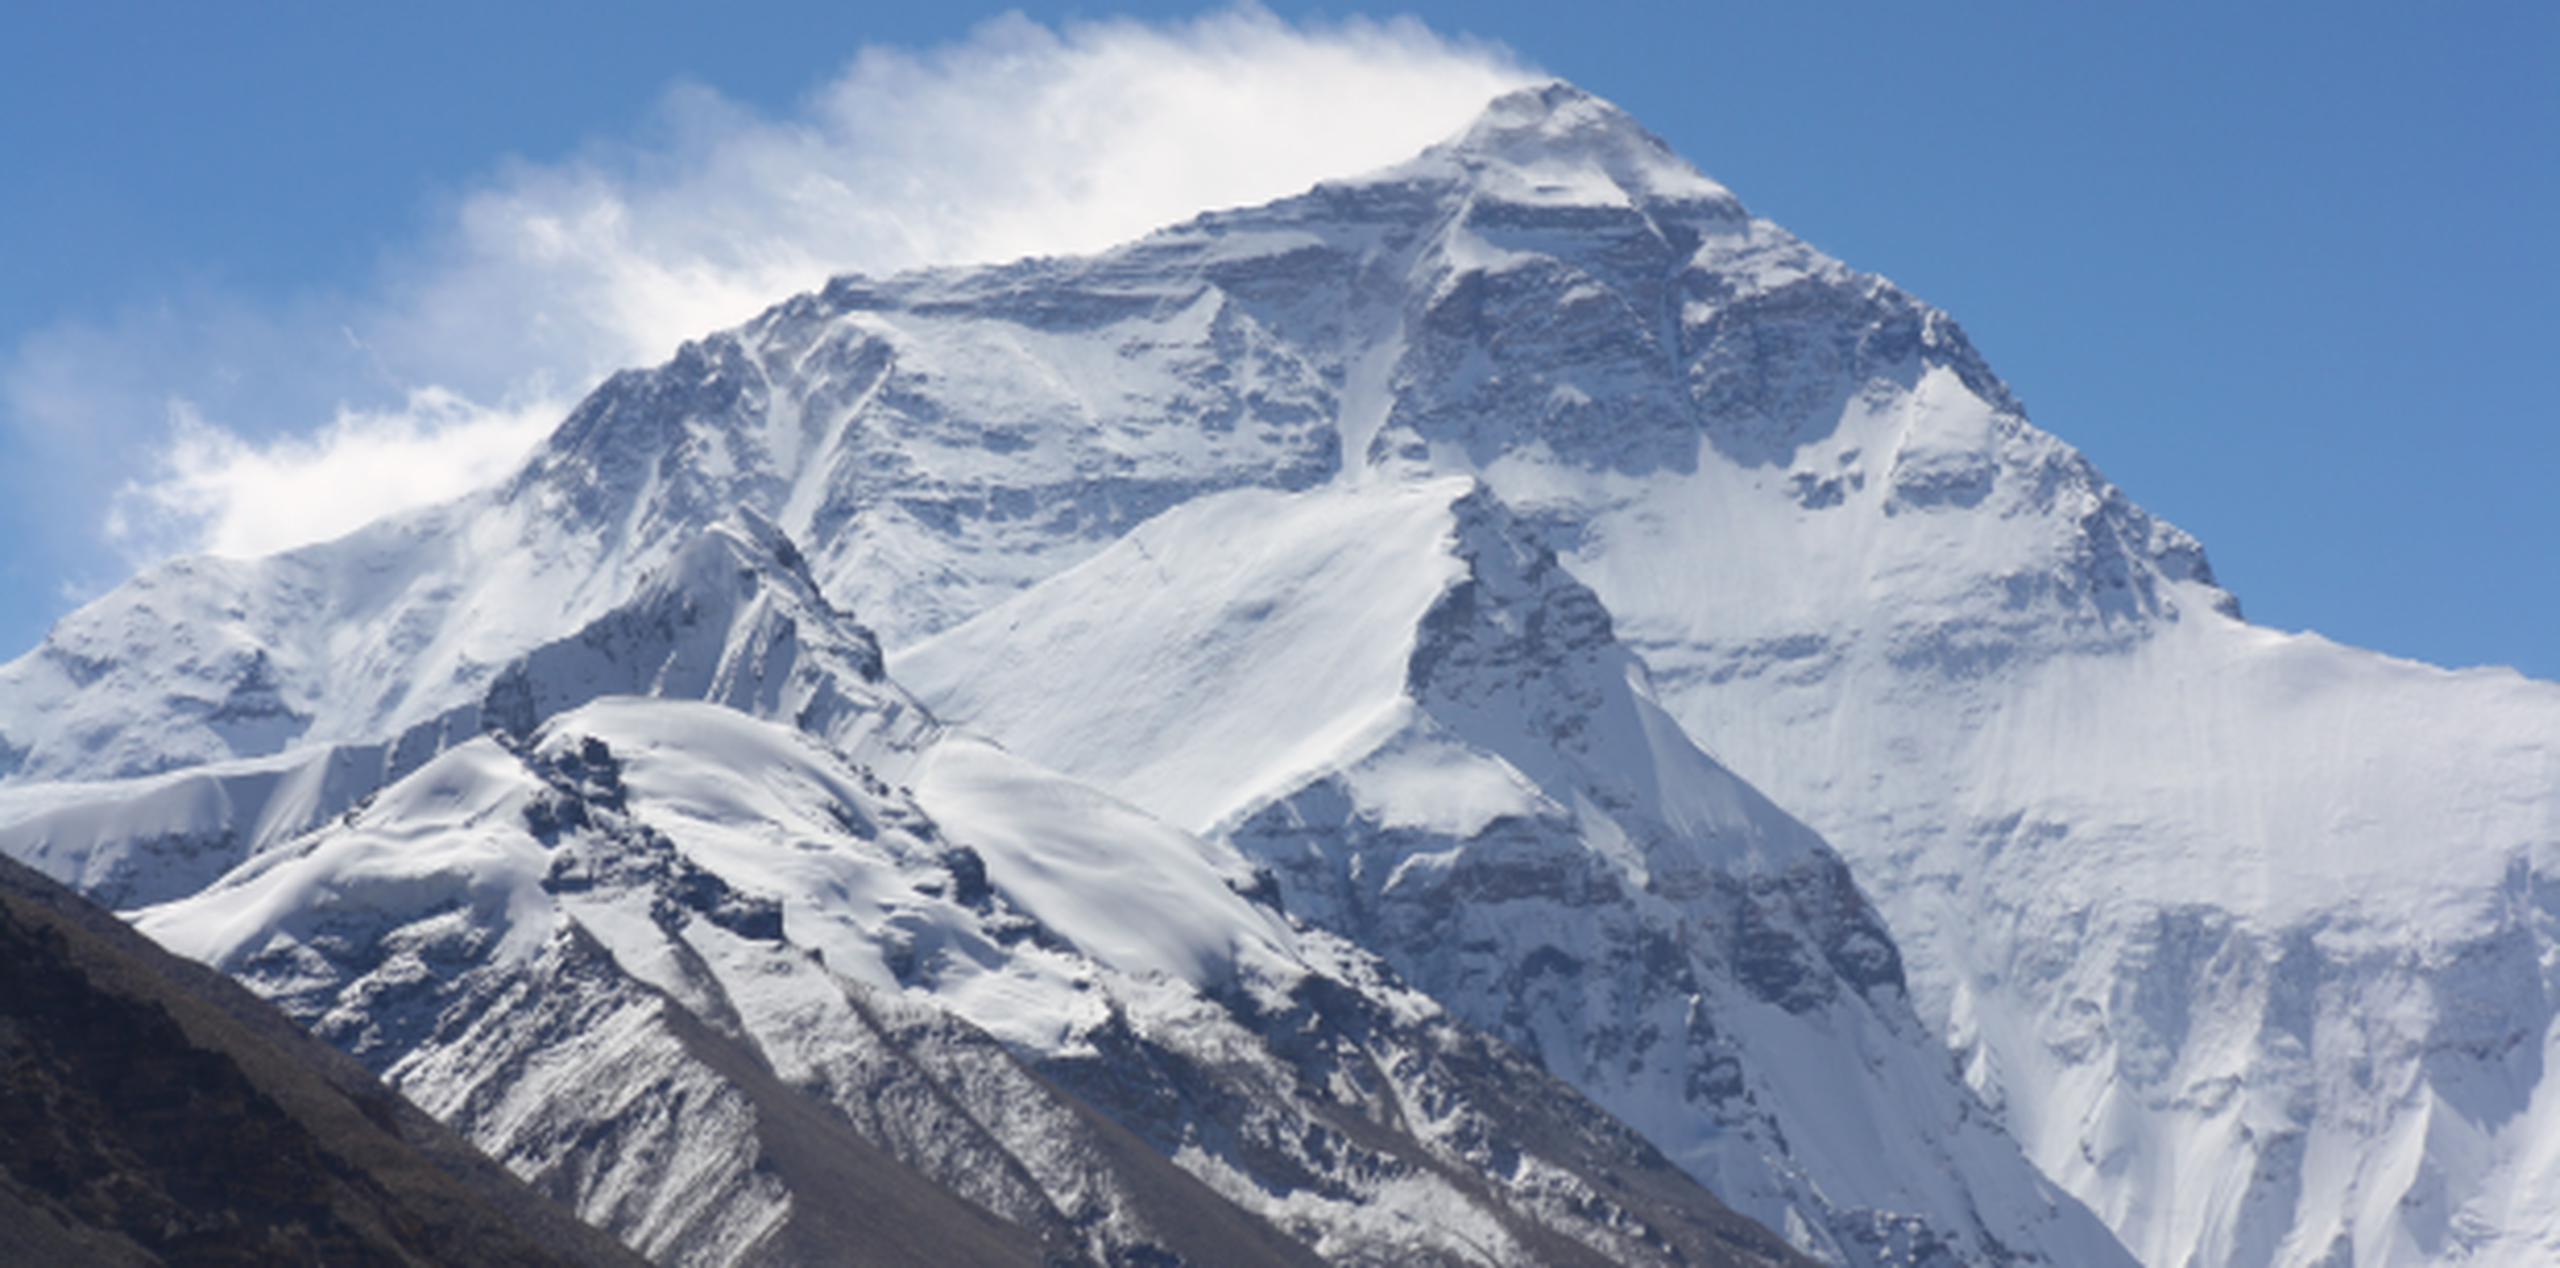 Alex Lowe y David Bridges desaparecieron en una avalancha en octubre de 1999, mientras buscaban una ubicación para esquiar en una de las montañas más altas del mundo. (Archivo)